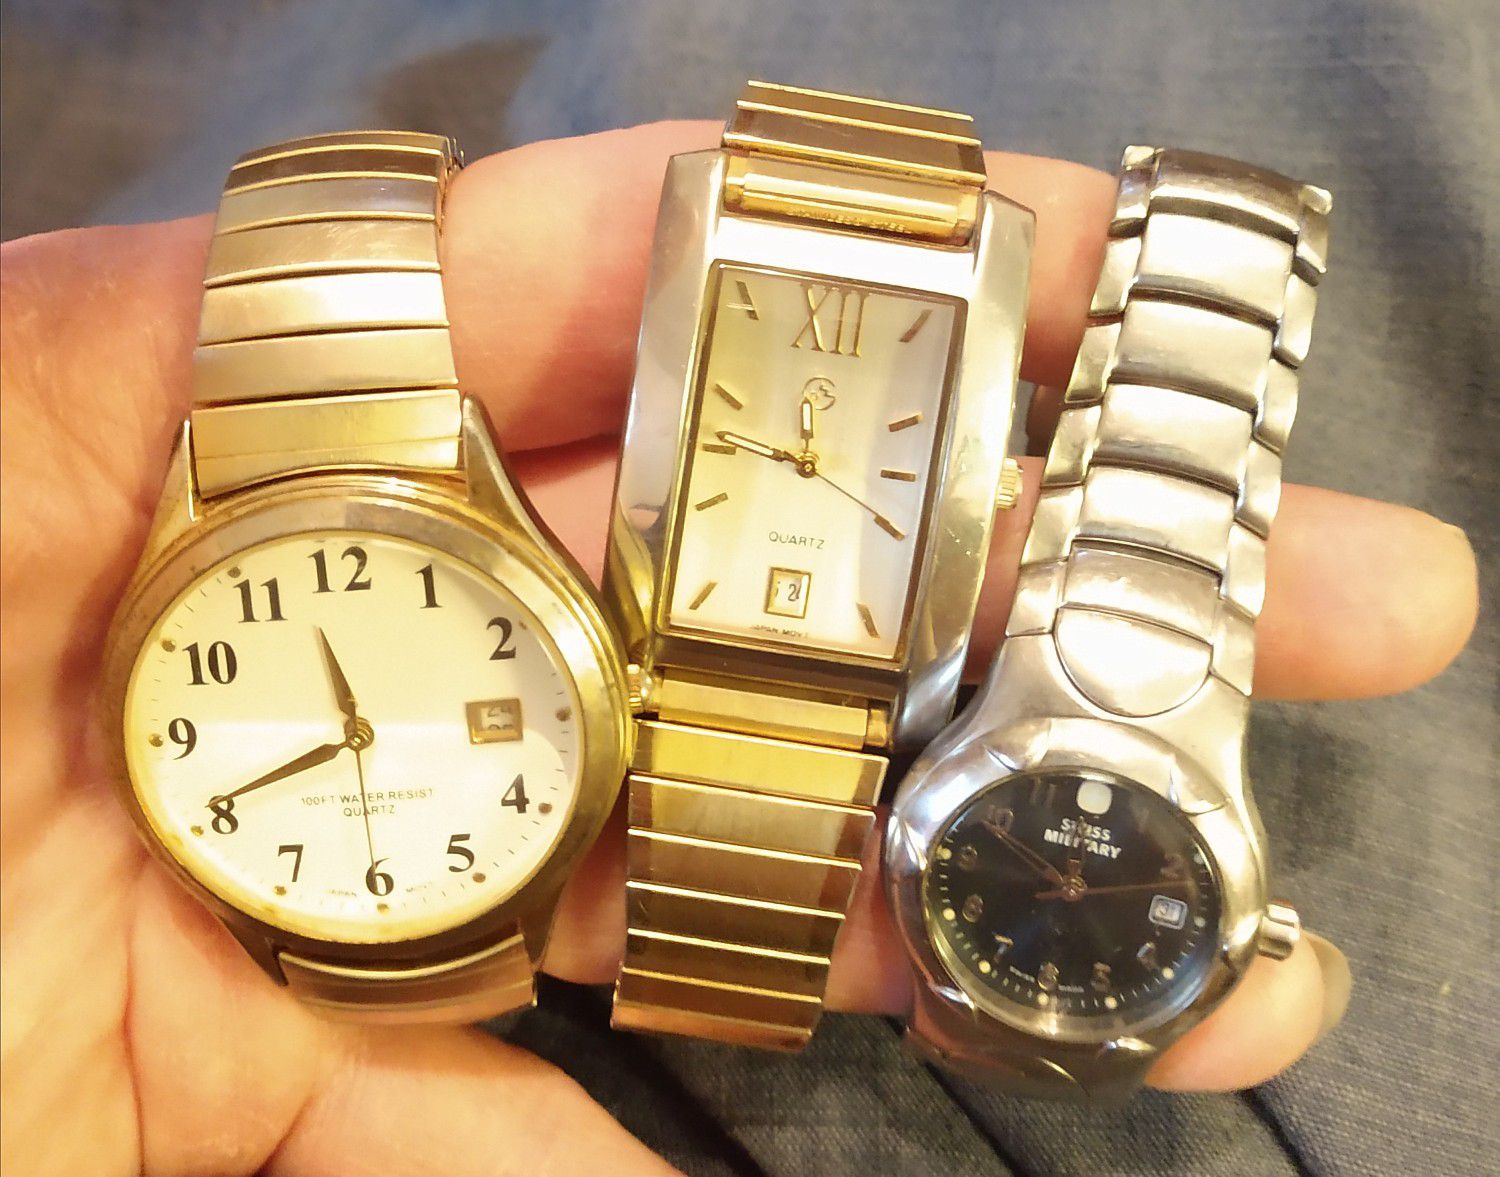 3 set's of men's watches